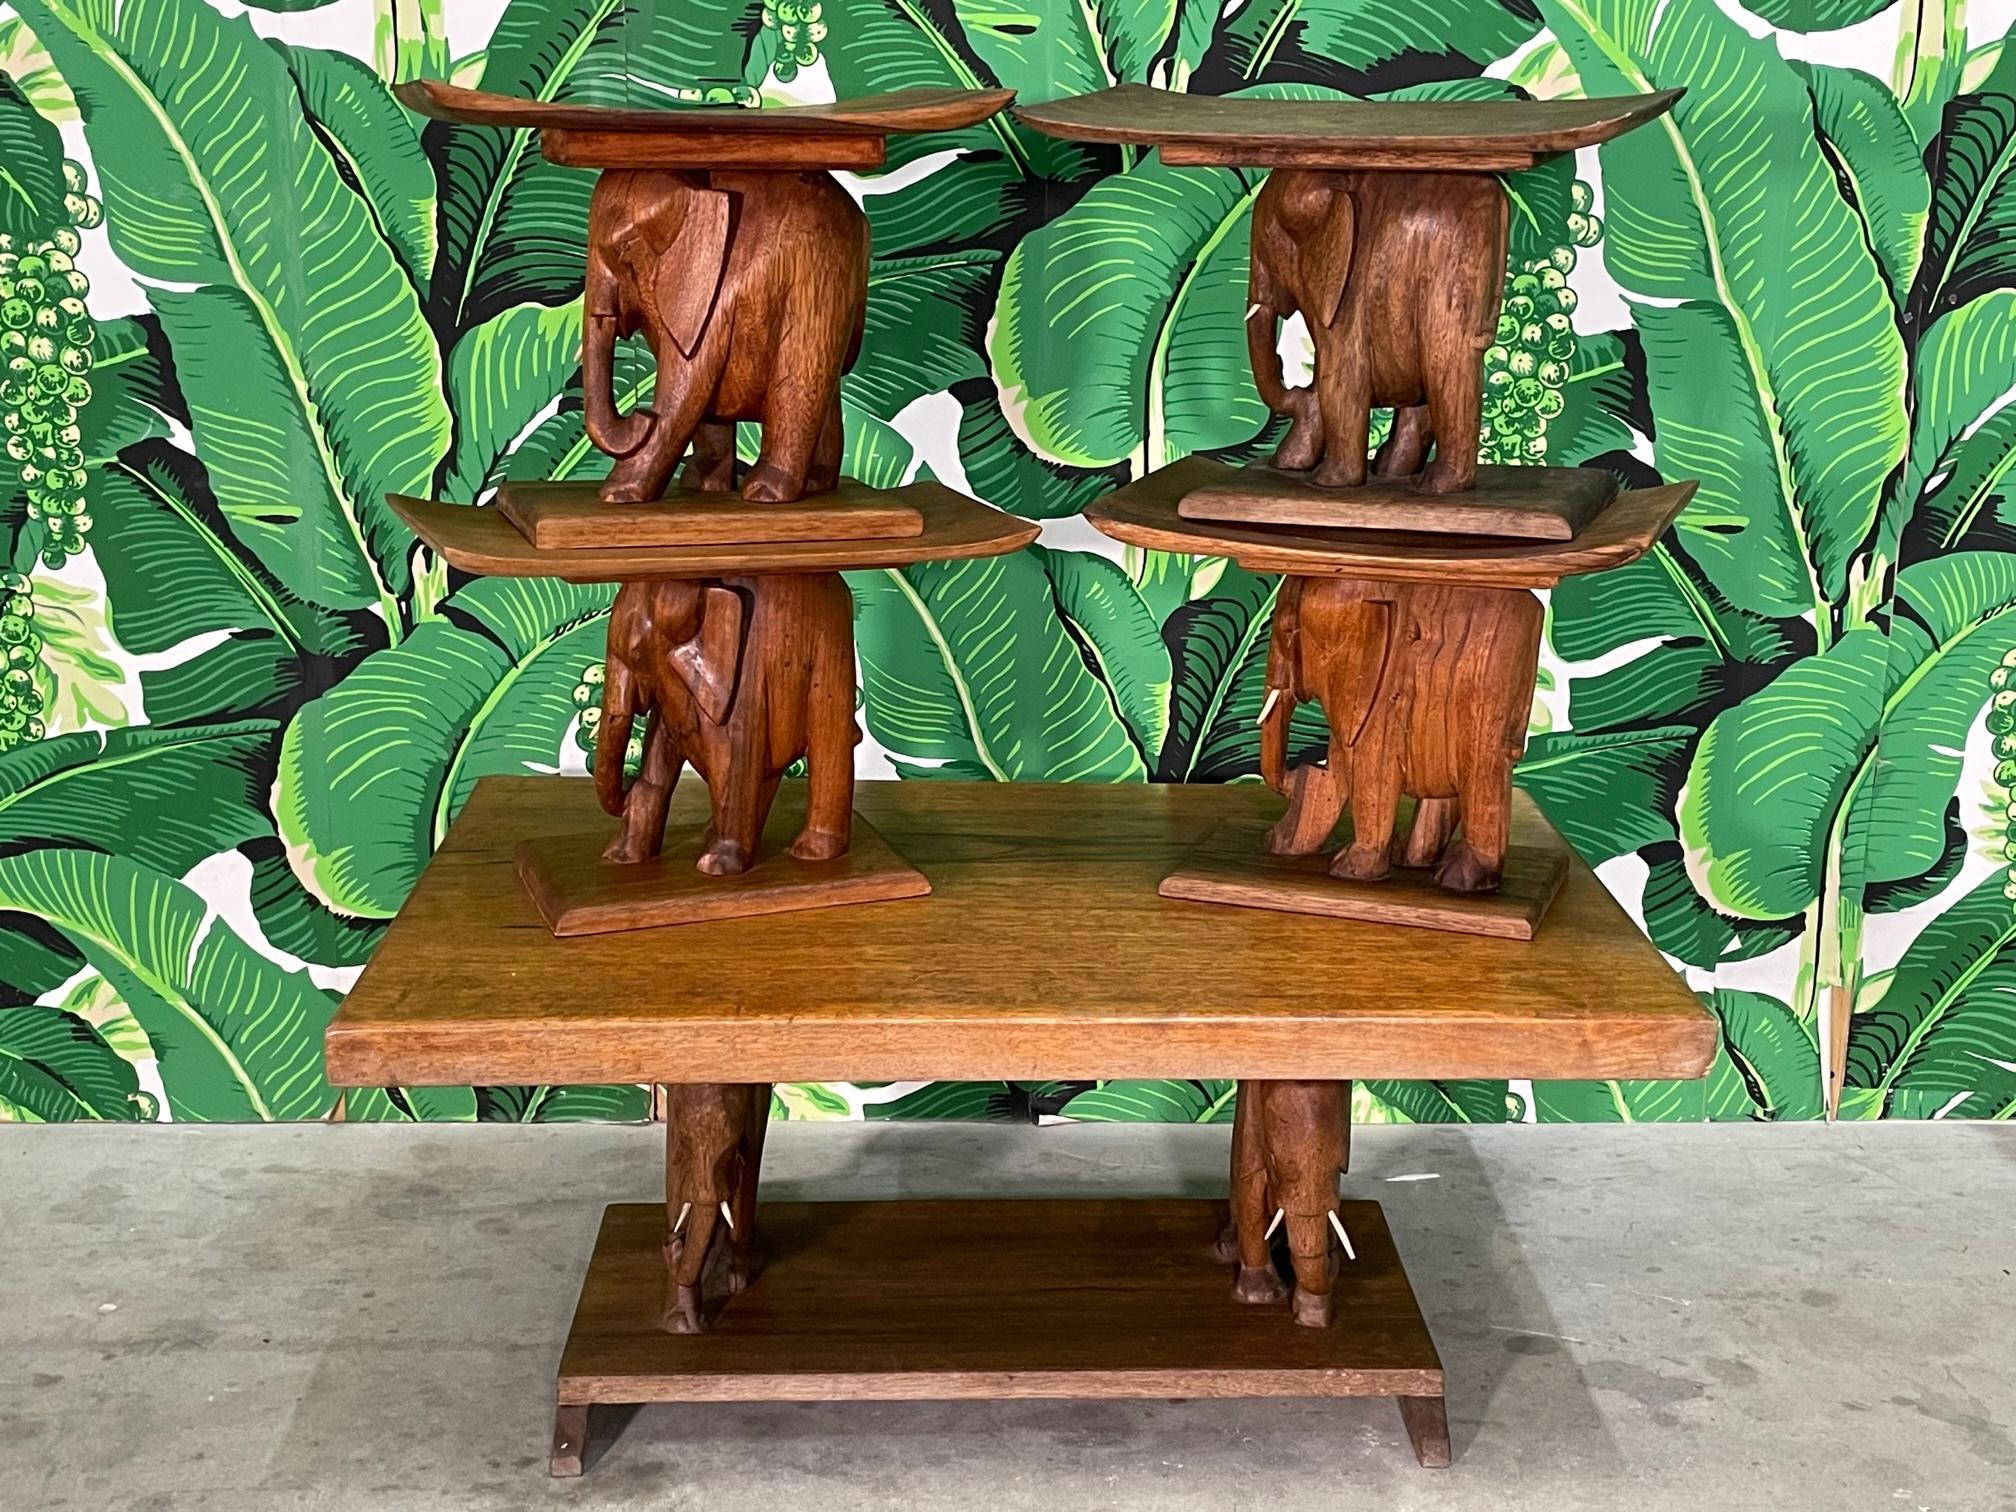 Tavolo e sedili in legno intagliato a mano con un motivo a elefante, attribuito alle tribù Ashanti (Asante) o Fanti (Fante) del Ghana, in Africa. Circa all'inizio del XX secolo. Buone condizioni strutturali, bella patinatura in tutto. Può presentare